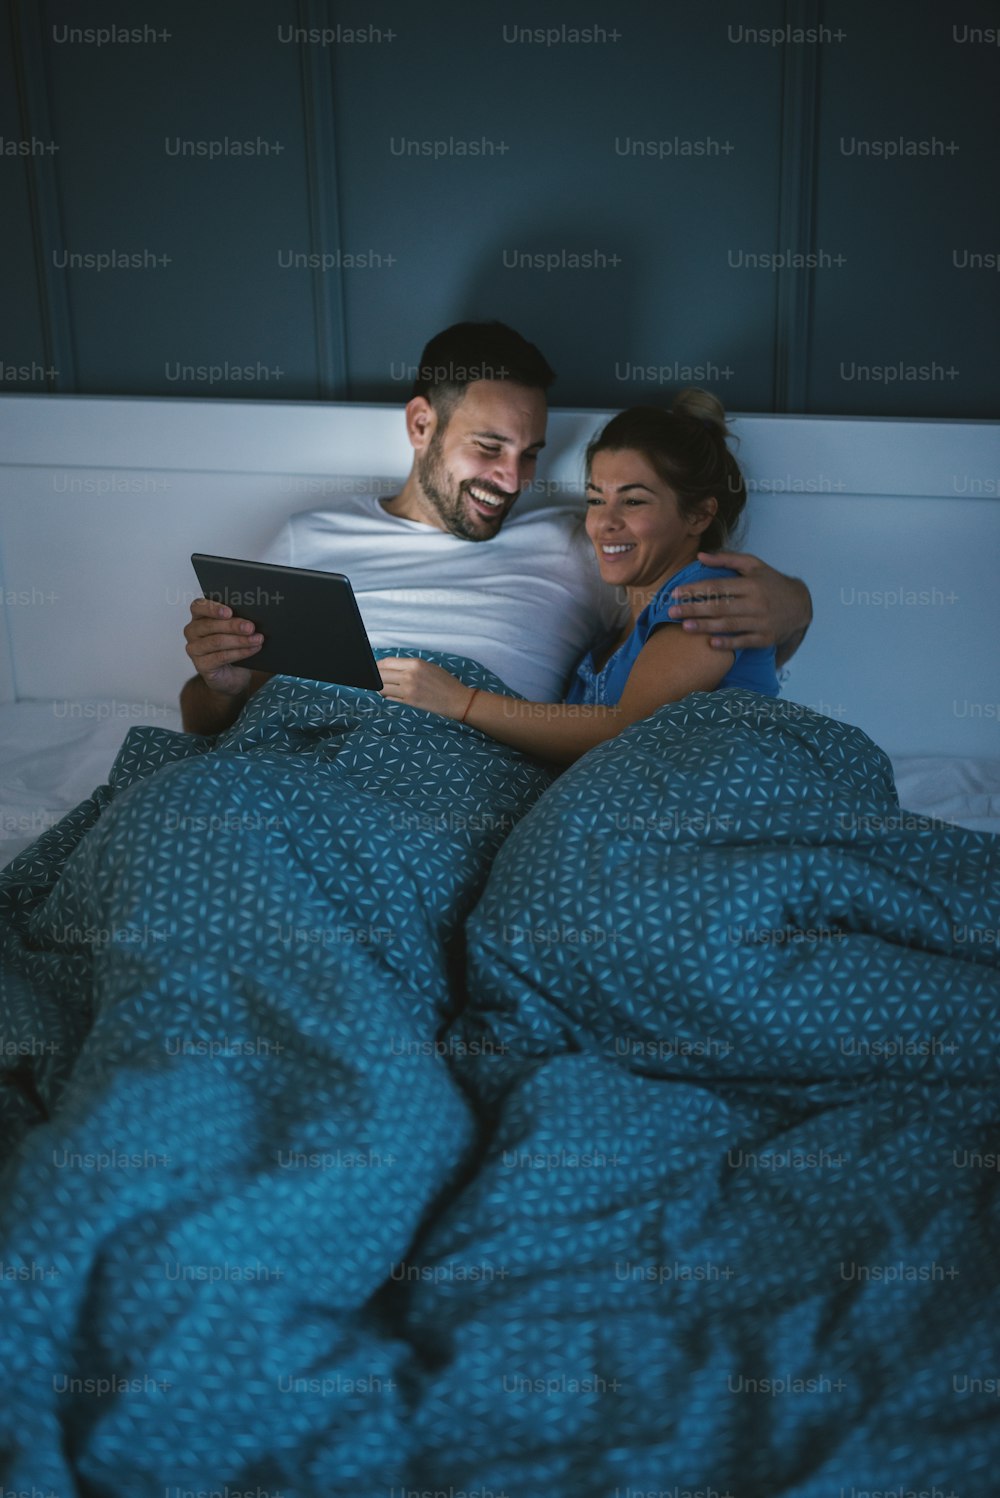 Heureux couple satisfait et détendu allongé dans son lit et surfant sur Internet.